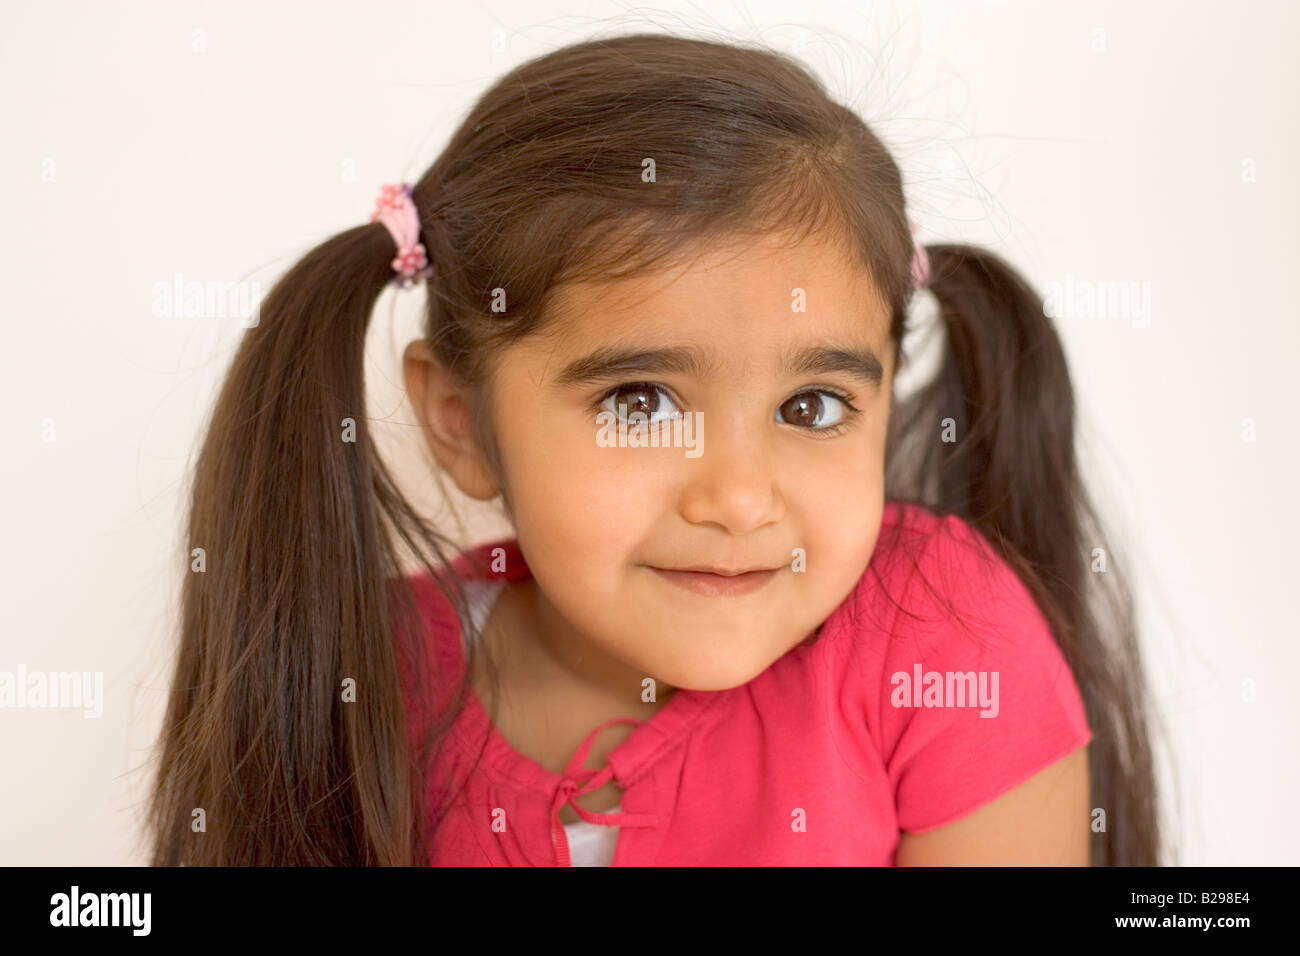 petite fille avec couettes et maquillage indien Stock Photo